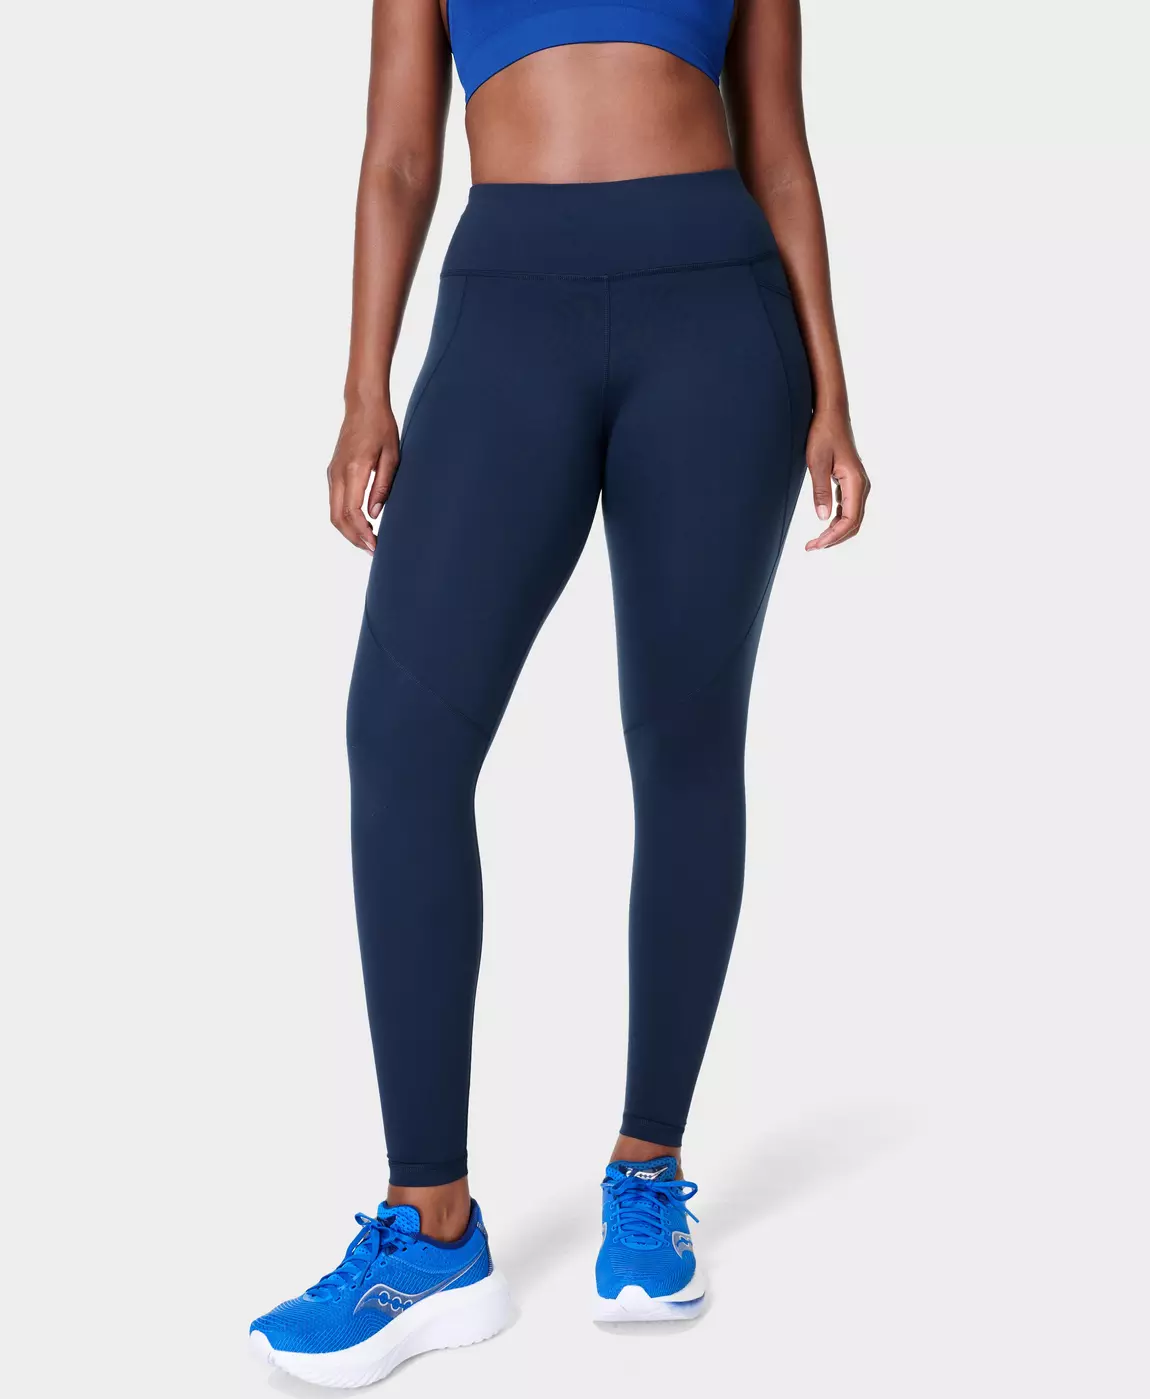 Sweaty Betty Leggings Yoga High Waist Ladies Affordable Legs Gym Wear 2020 Fly 